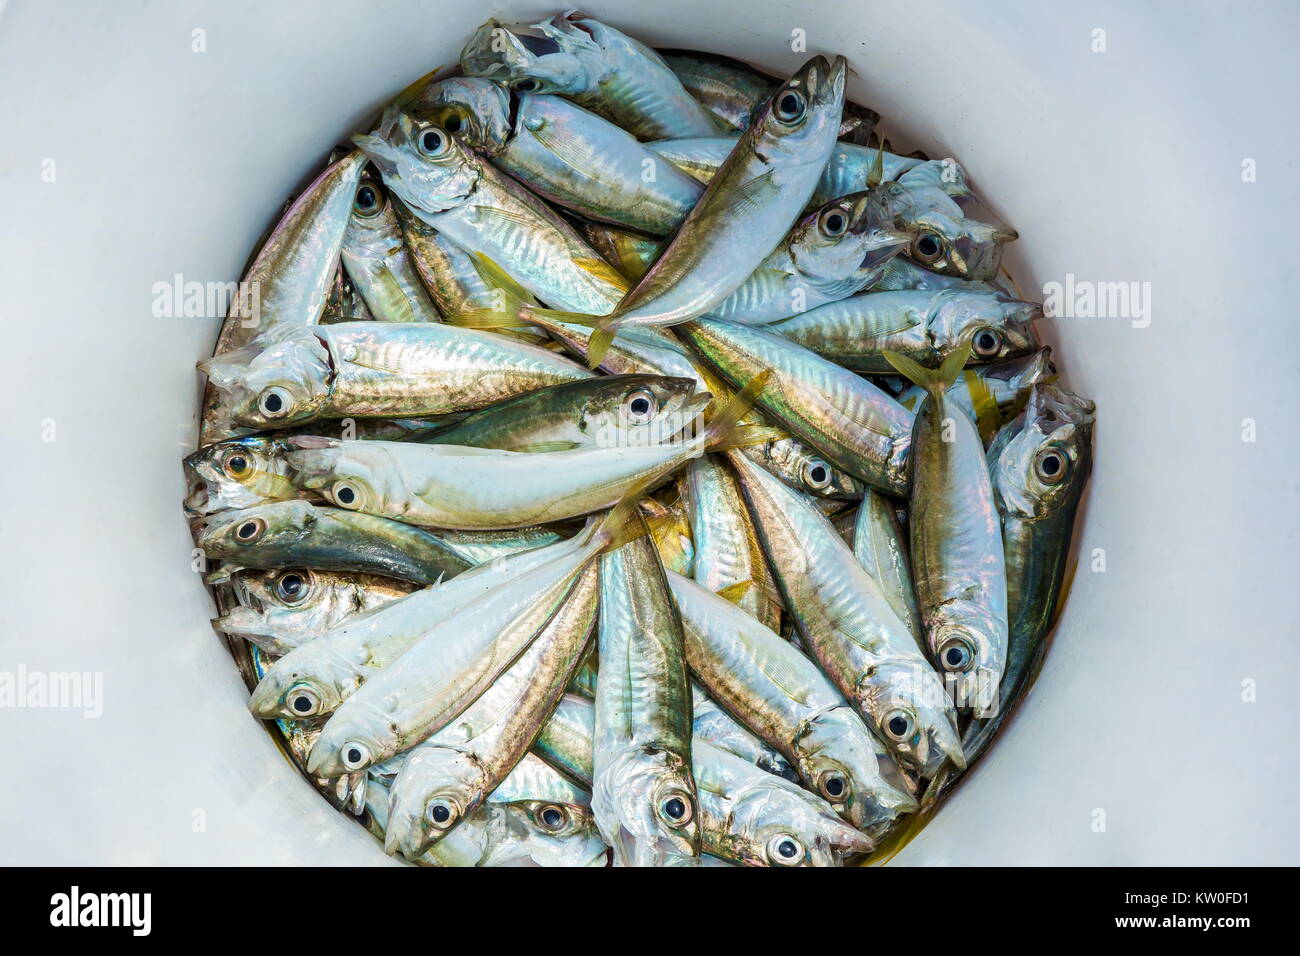 Scull surpris en action de pêche se trouve dans une benne blanche, des poissons fraîchement pêchés Banque D'Images